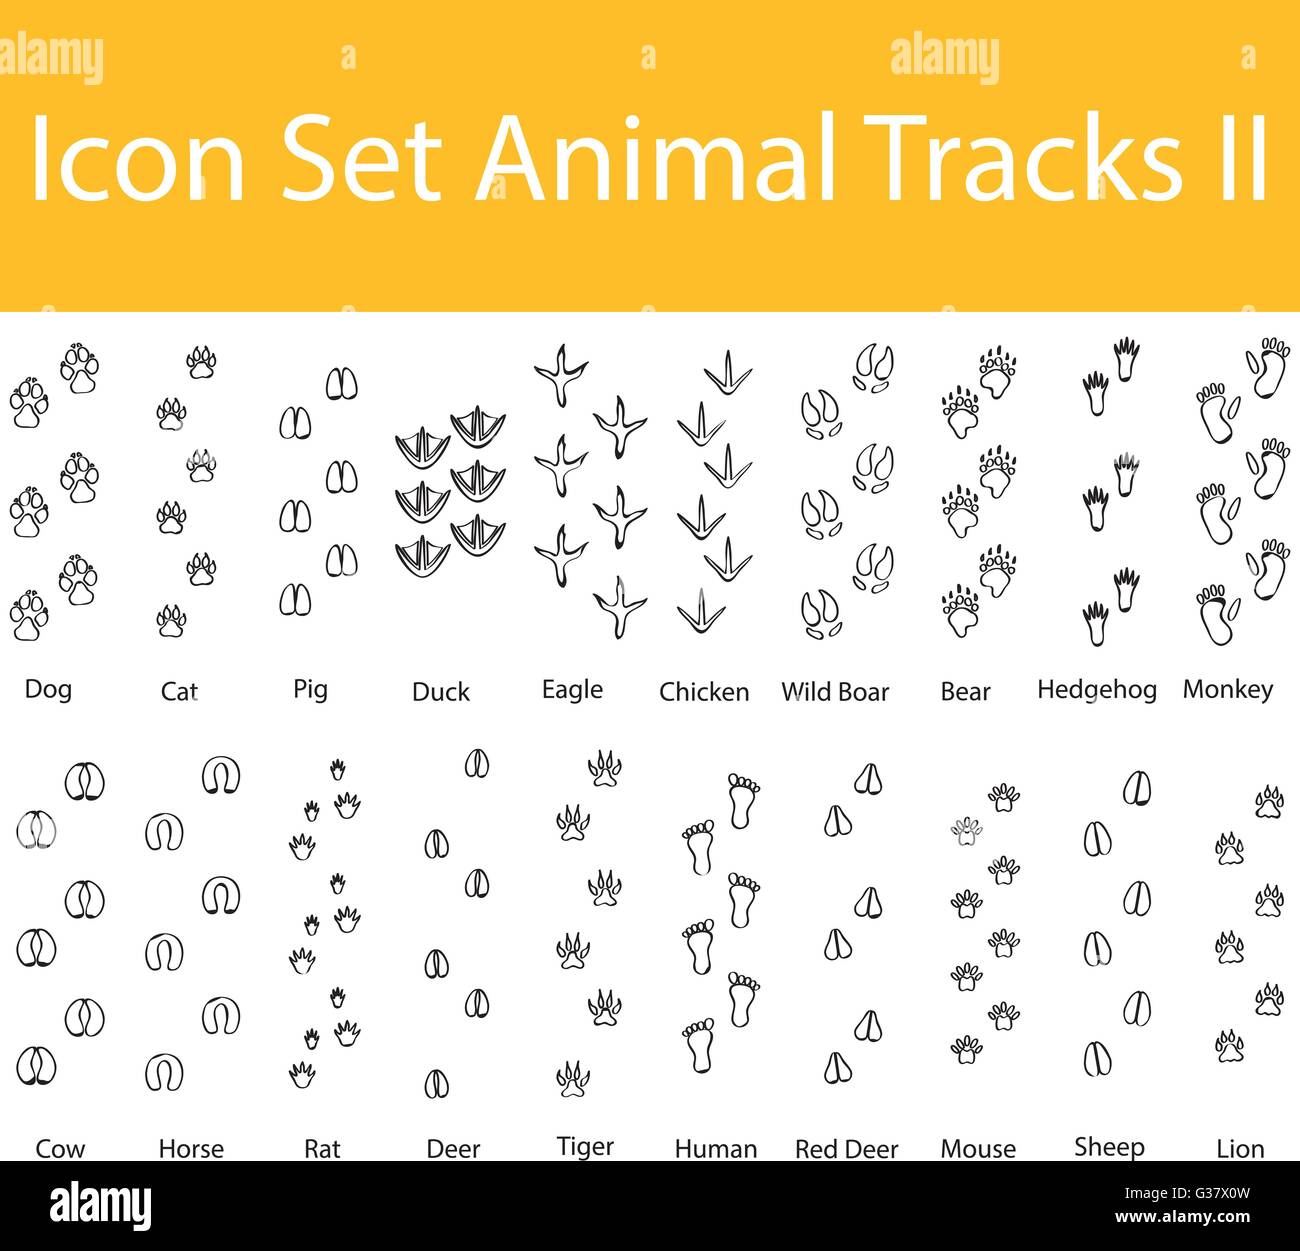 Gezeichnet von Doodle ausgekleidet Icon Set Animal Tracks II mit 20 Icons für den kreativen Einsatz in Grafik-design Stock Vektor